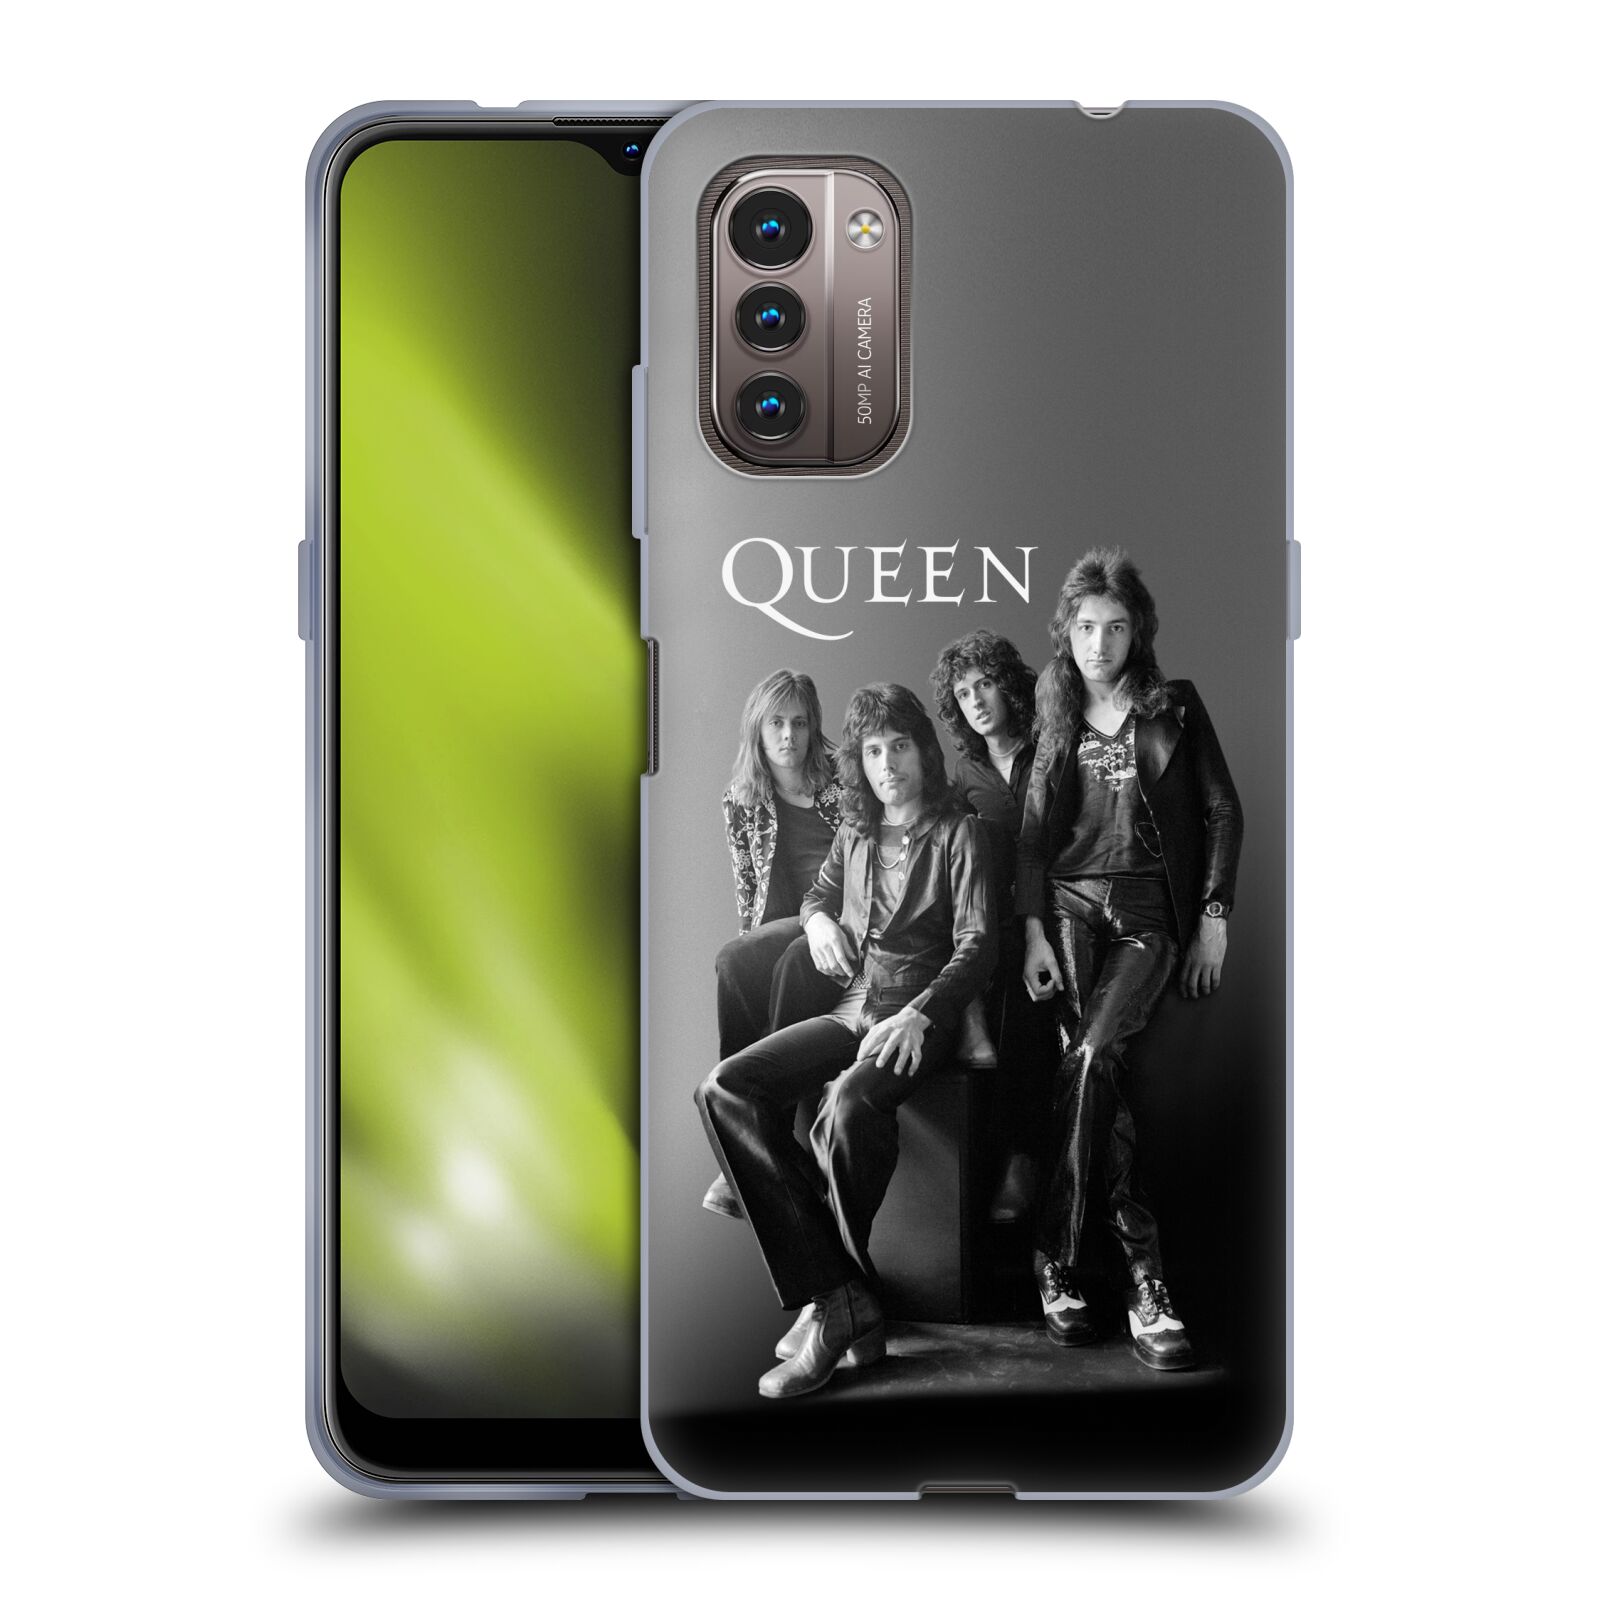 Silikonové pouzdro na mobil Nokia G11 / G21 - Head Case - Queen - Skupina